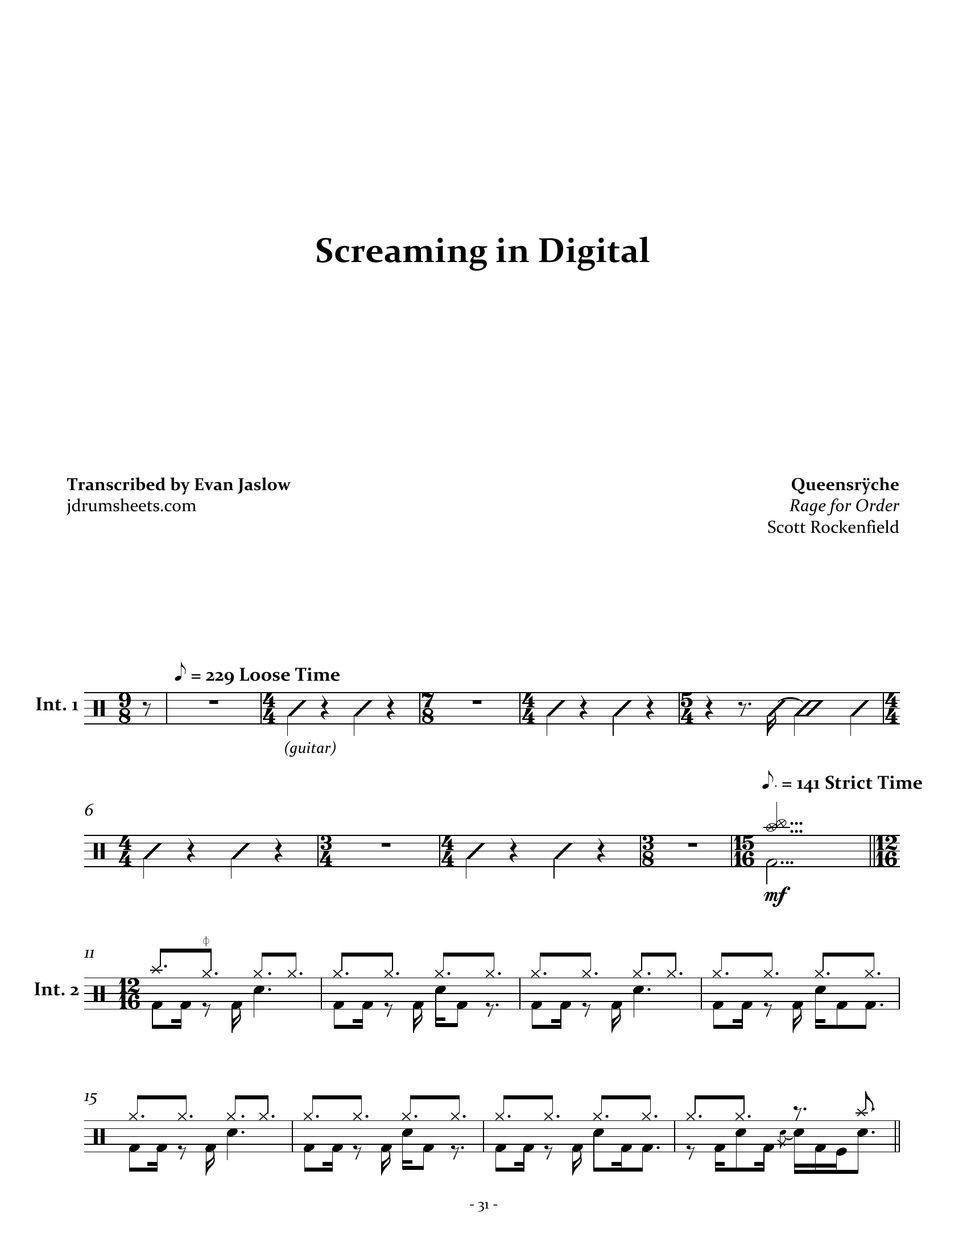 Queensrÿche - Screaming in Digital by Evan Aria Serenity